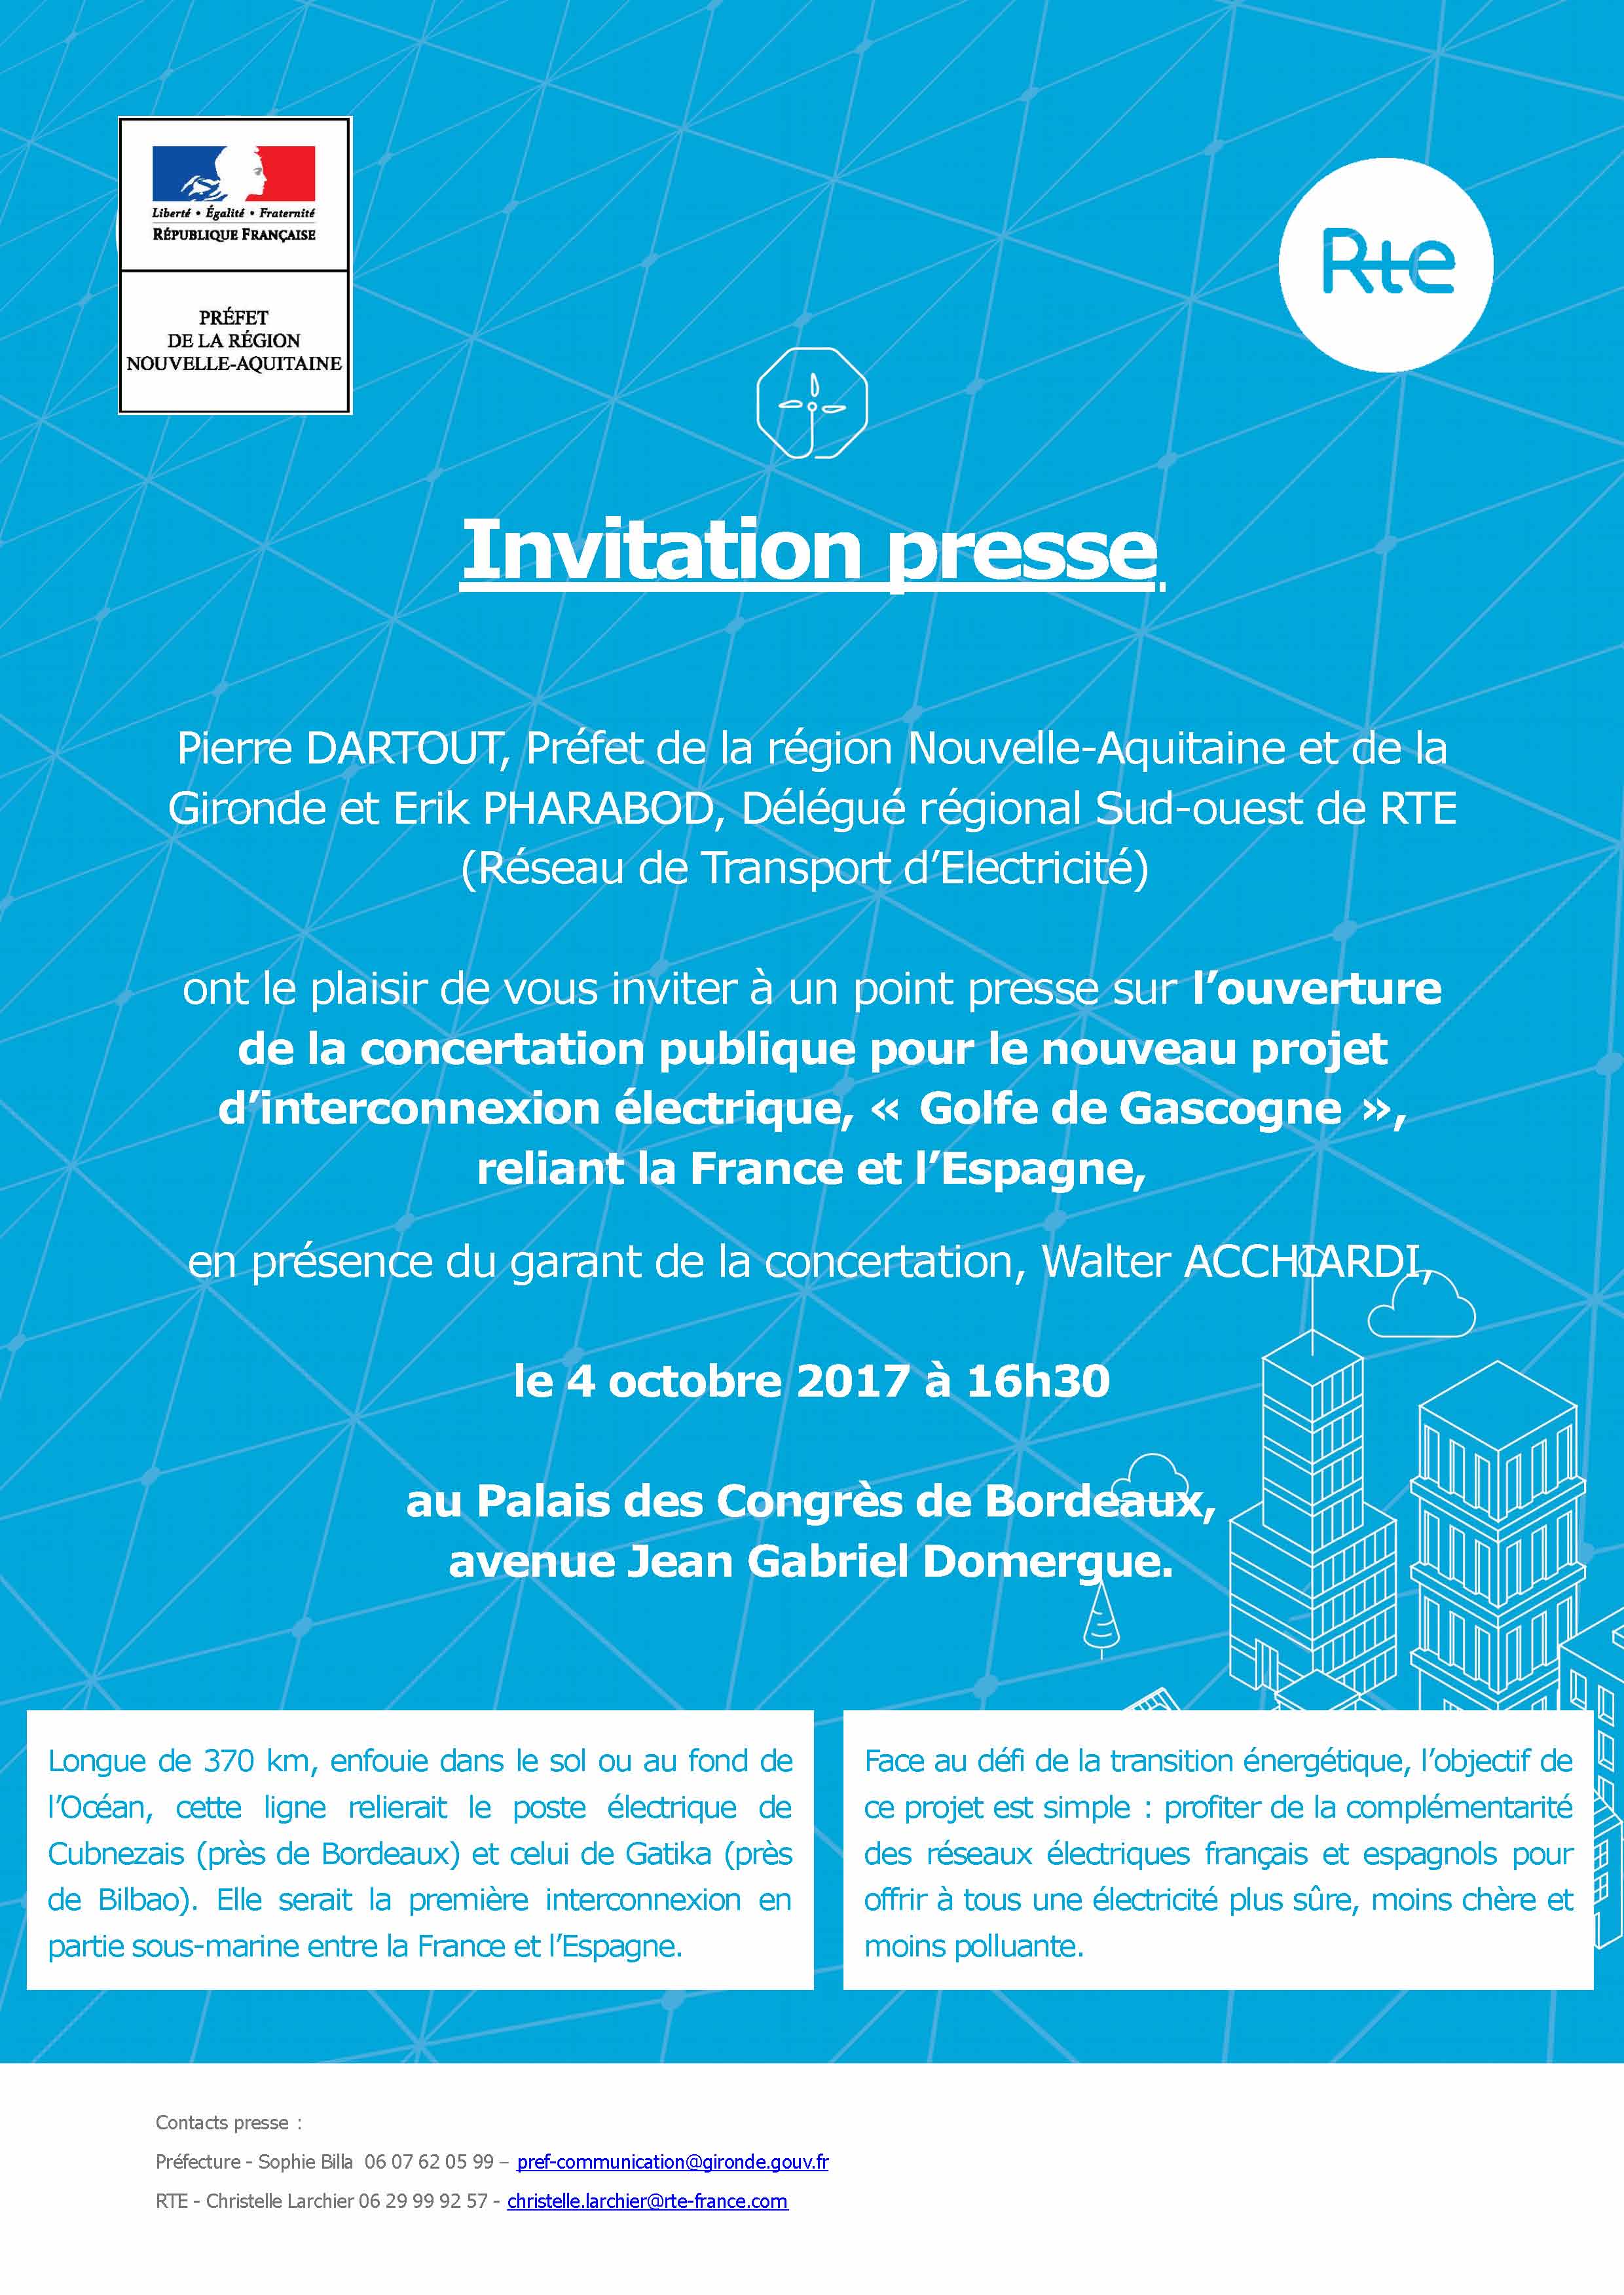 2017-10-02-ip-projet-dinterconnexion-electrique-france-espagne